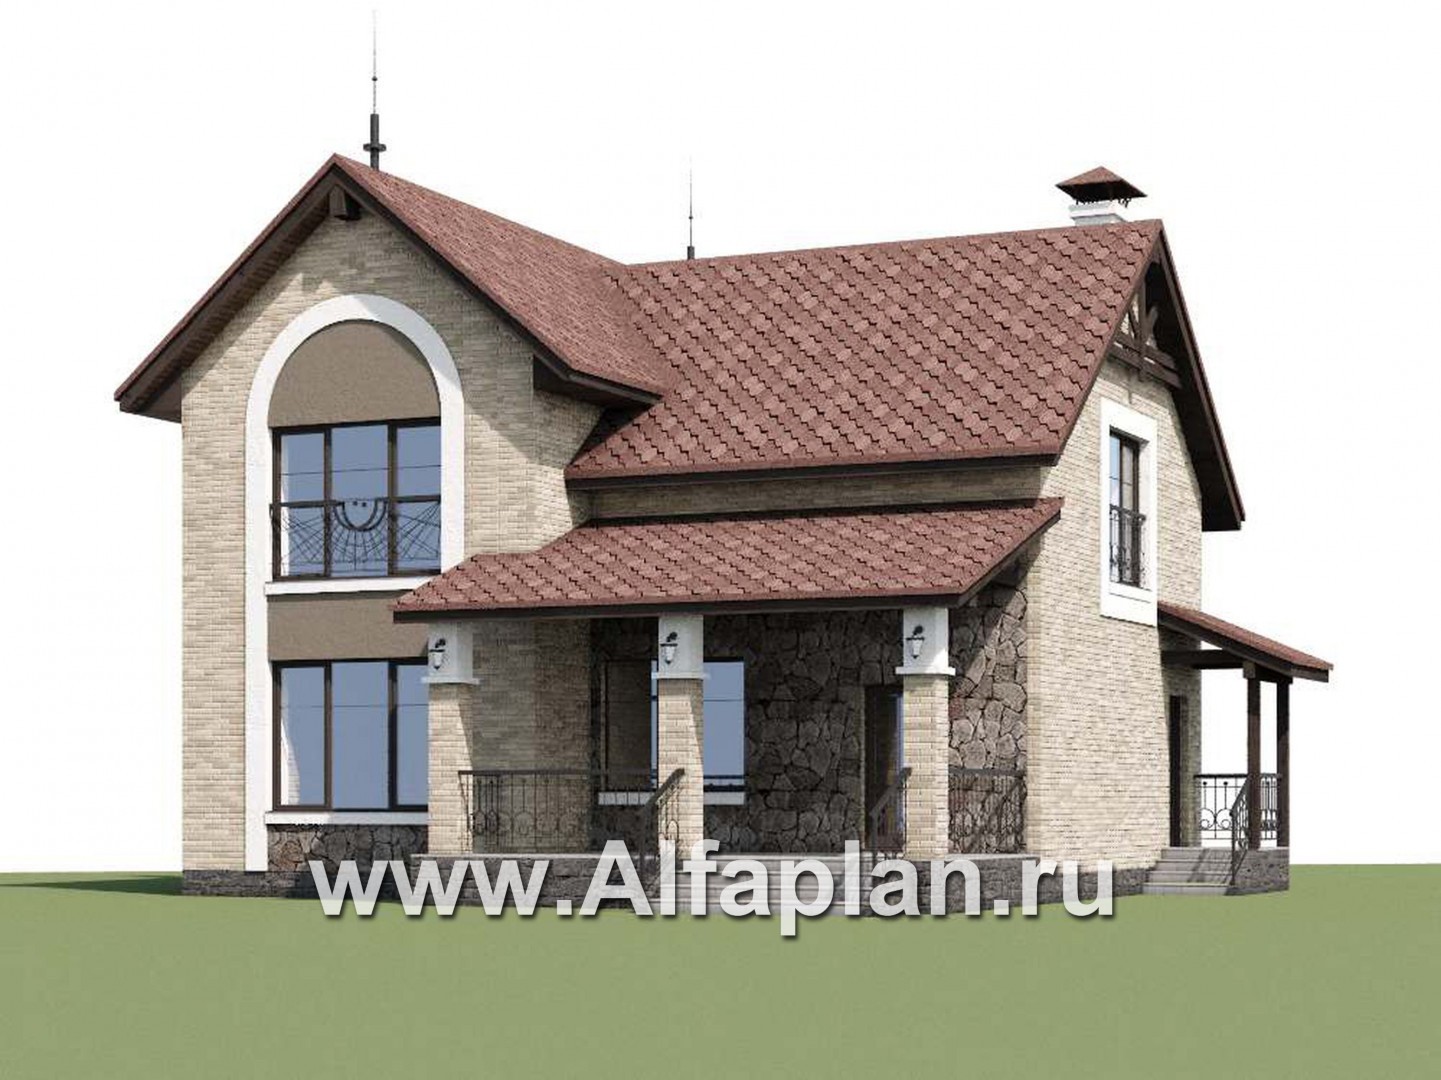 Проекты домов Альфаплан - «Огни залива» - проект дома с открытой планировкой - дополнительное изображение №1